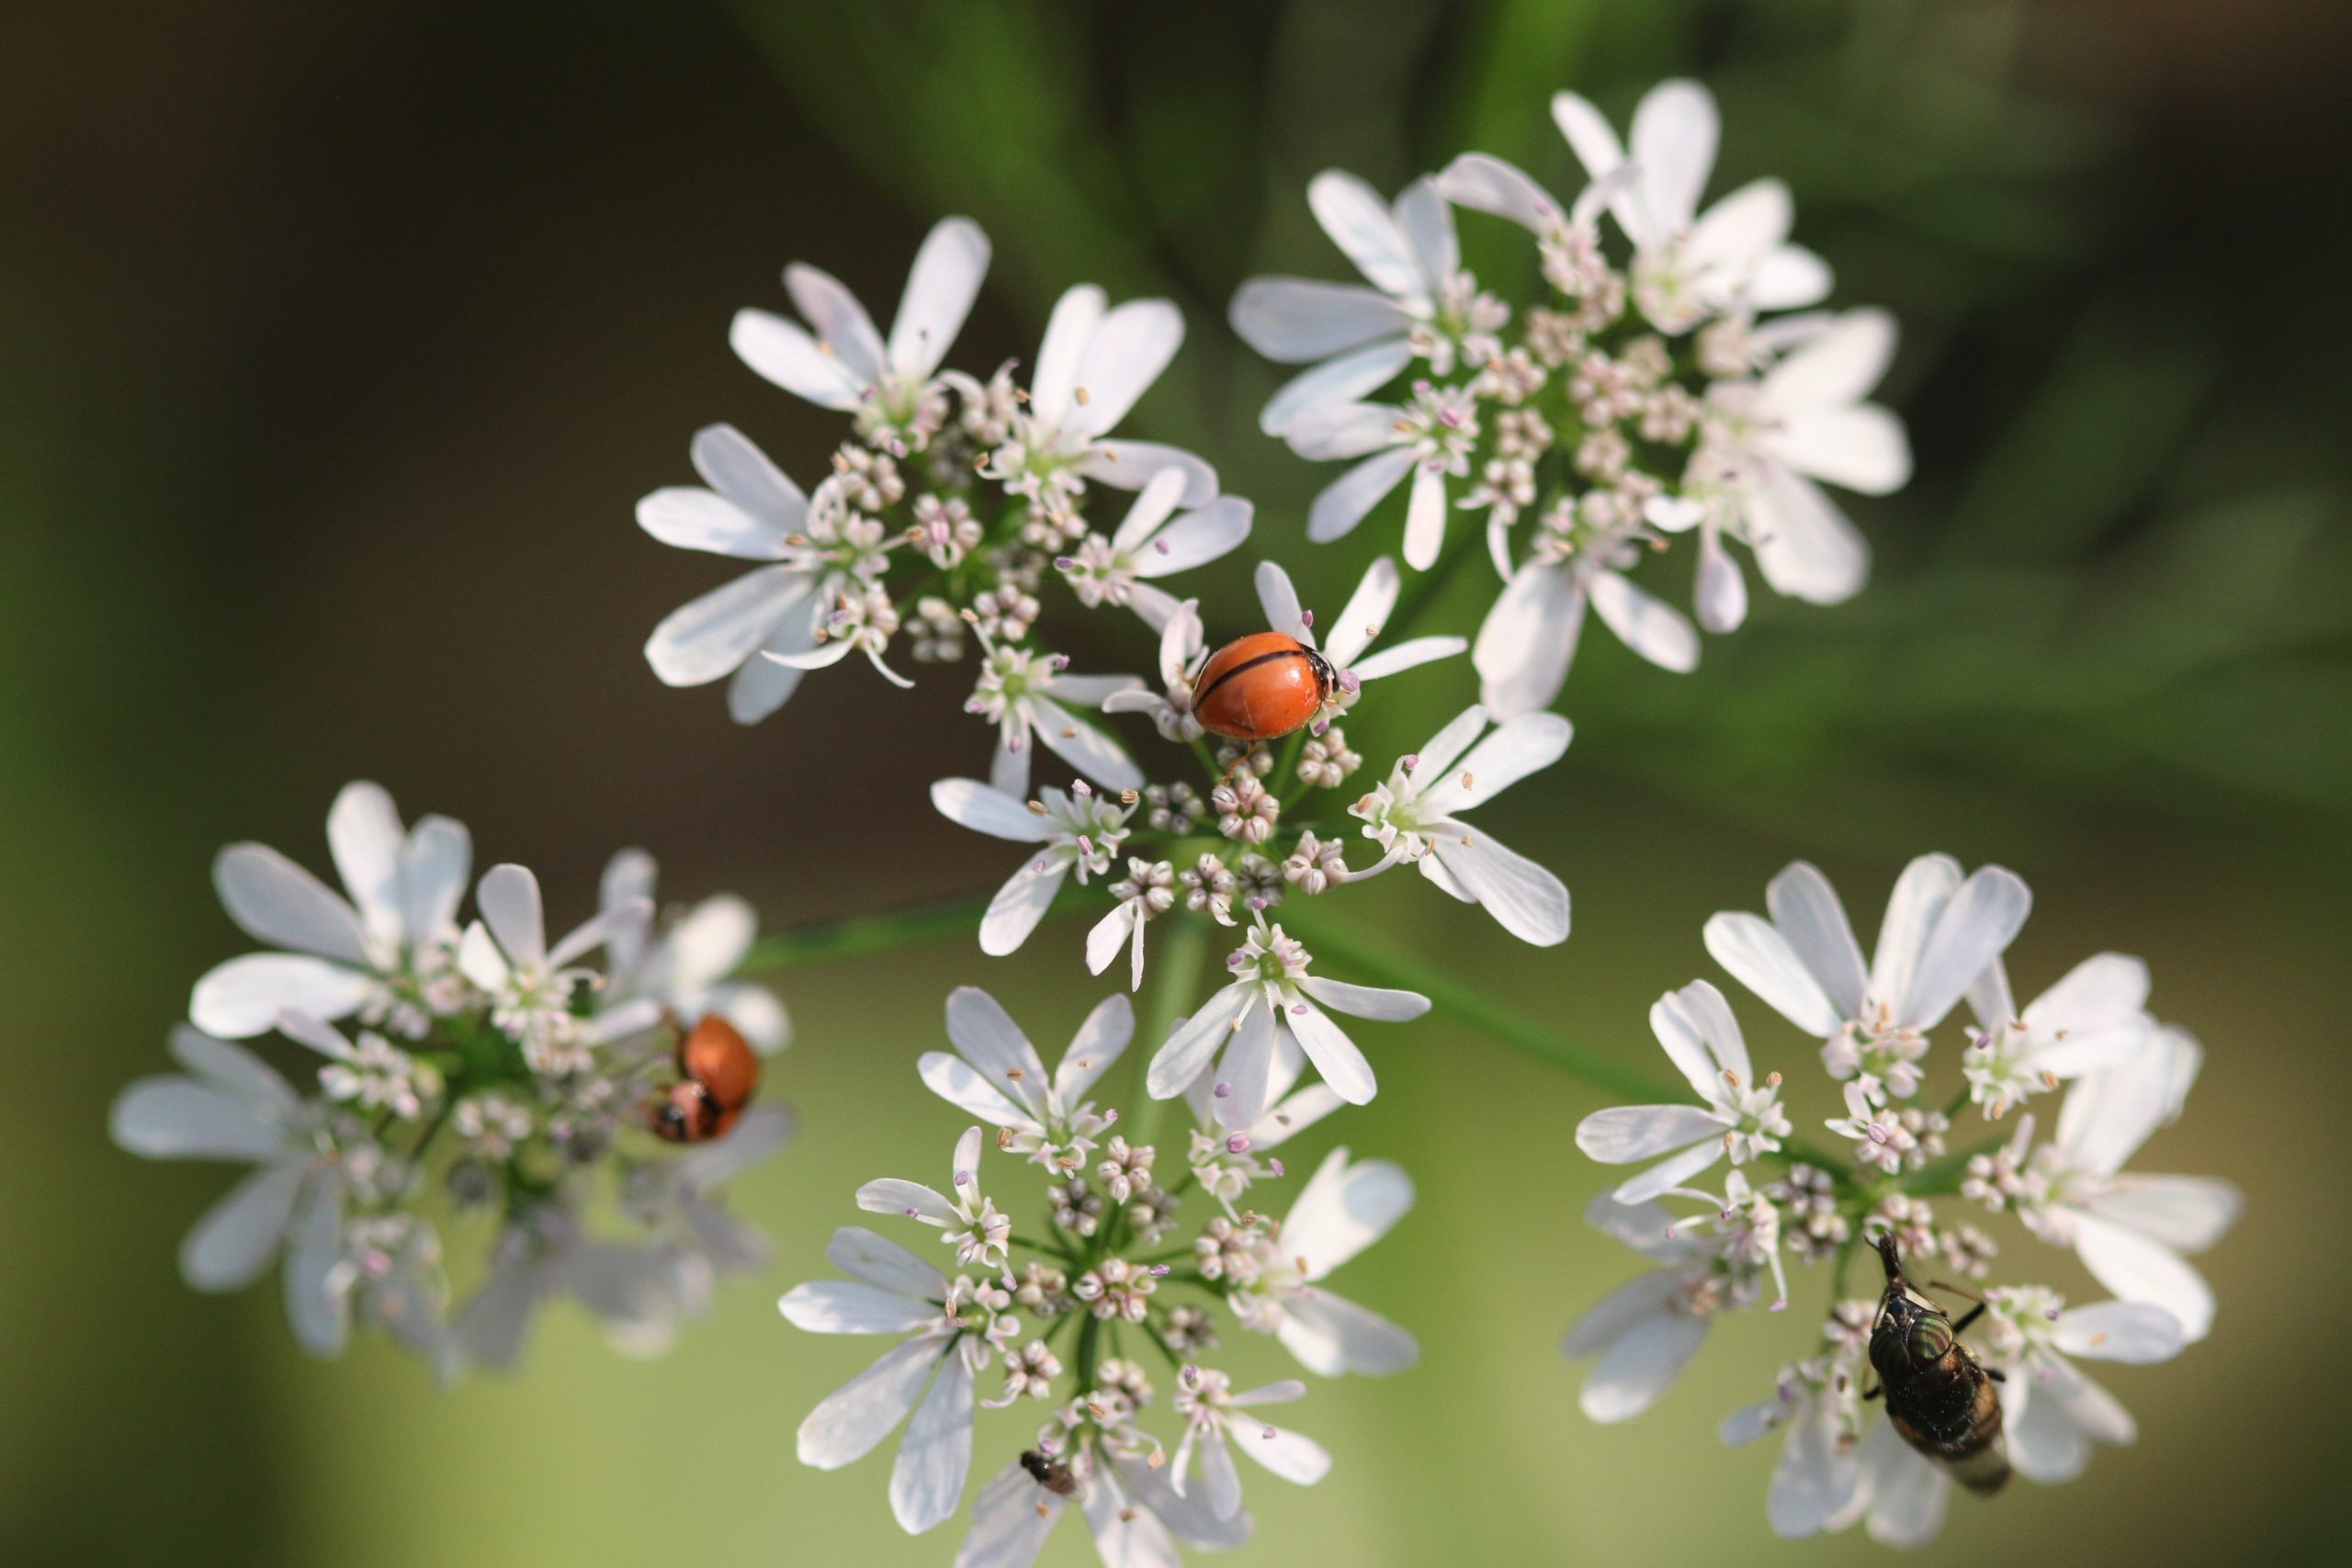 Ladybugs sitting on white flowers.